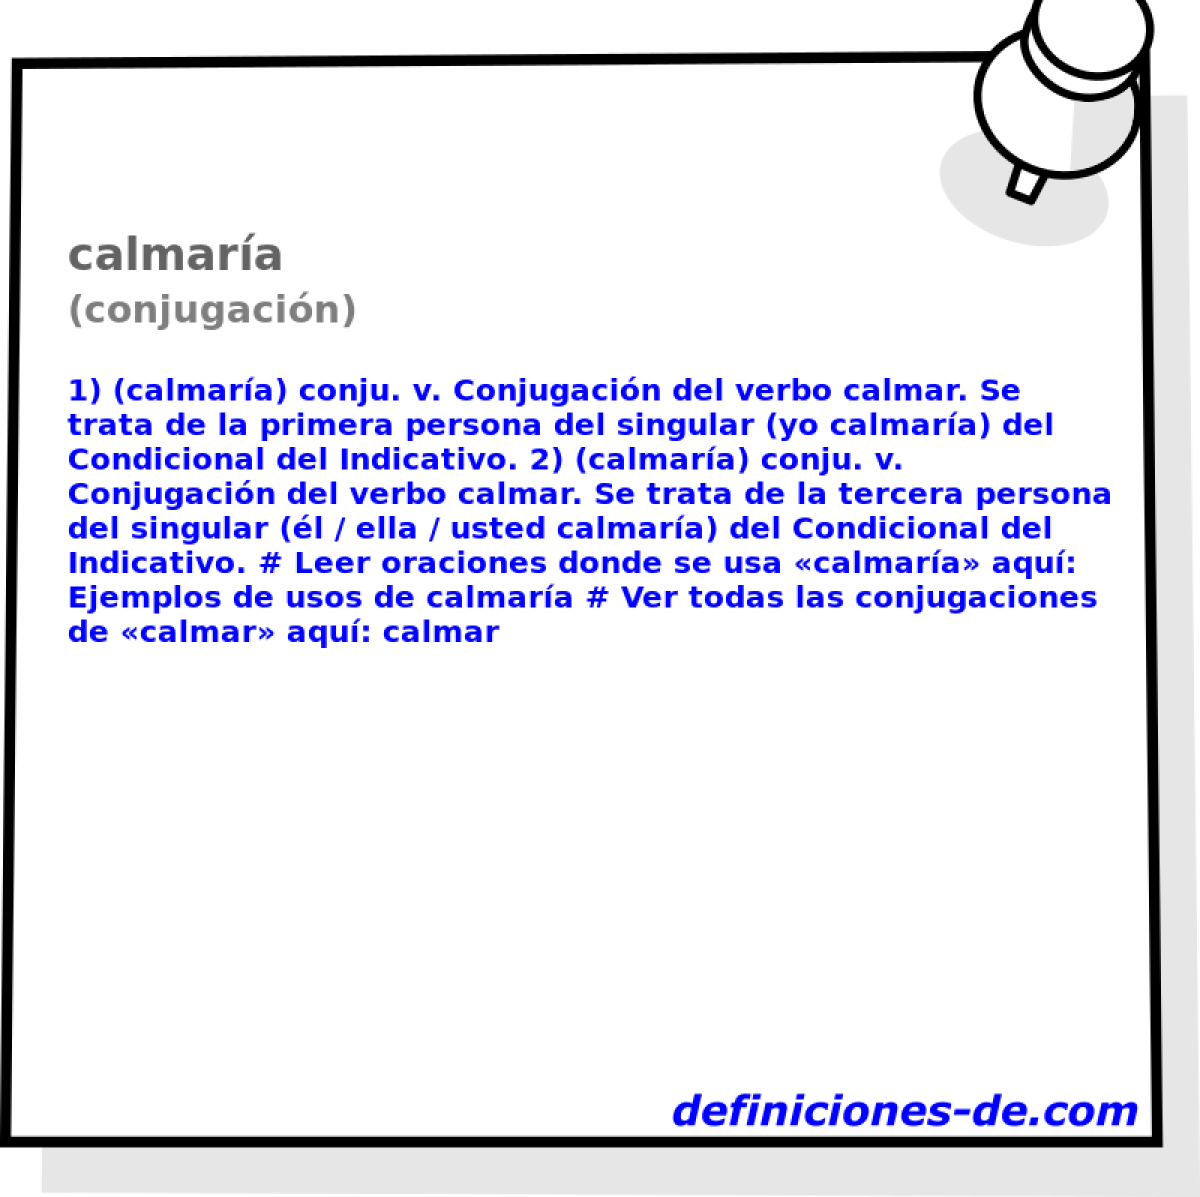 calmara (conjugacin)